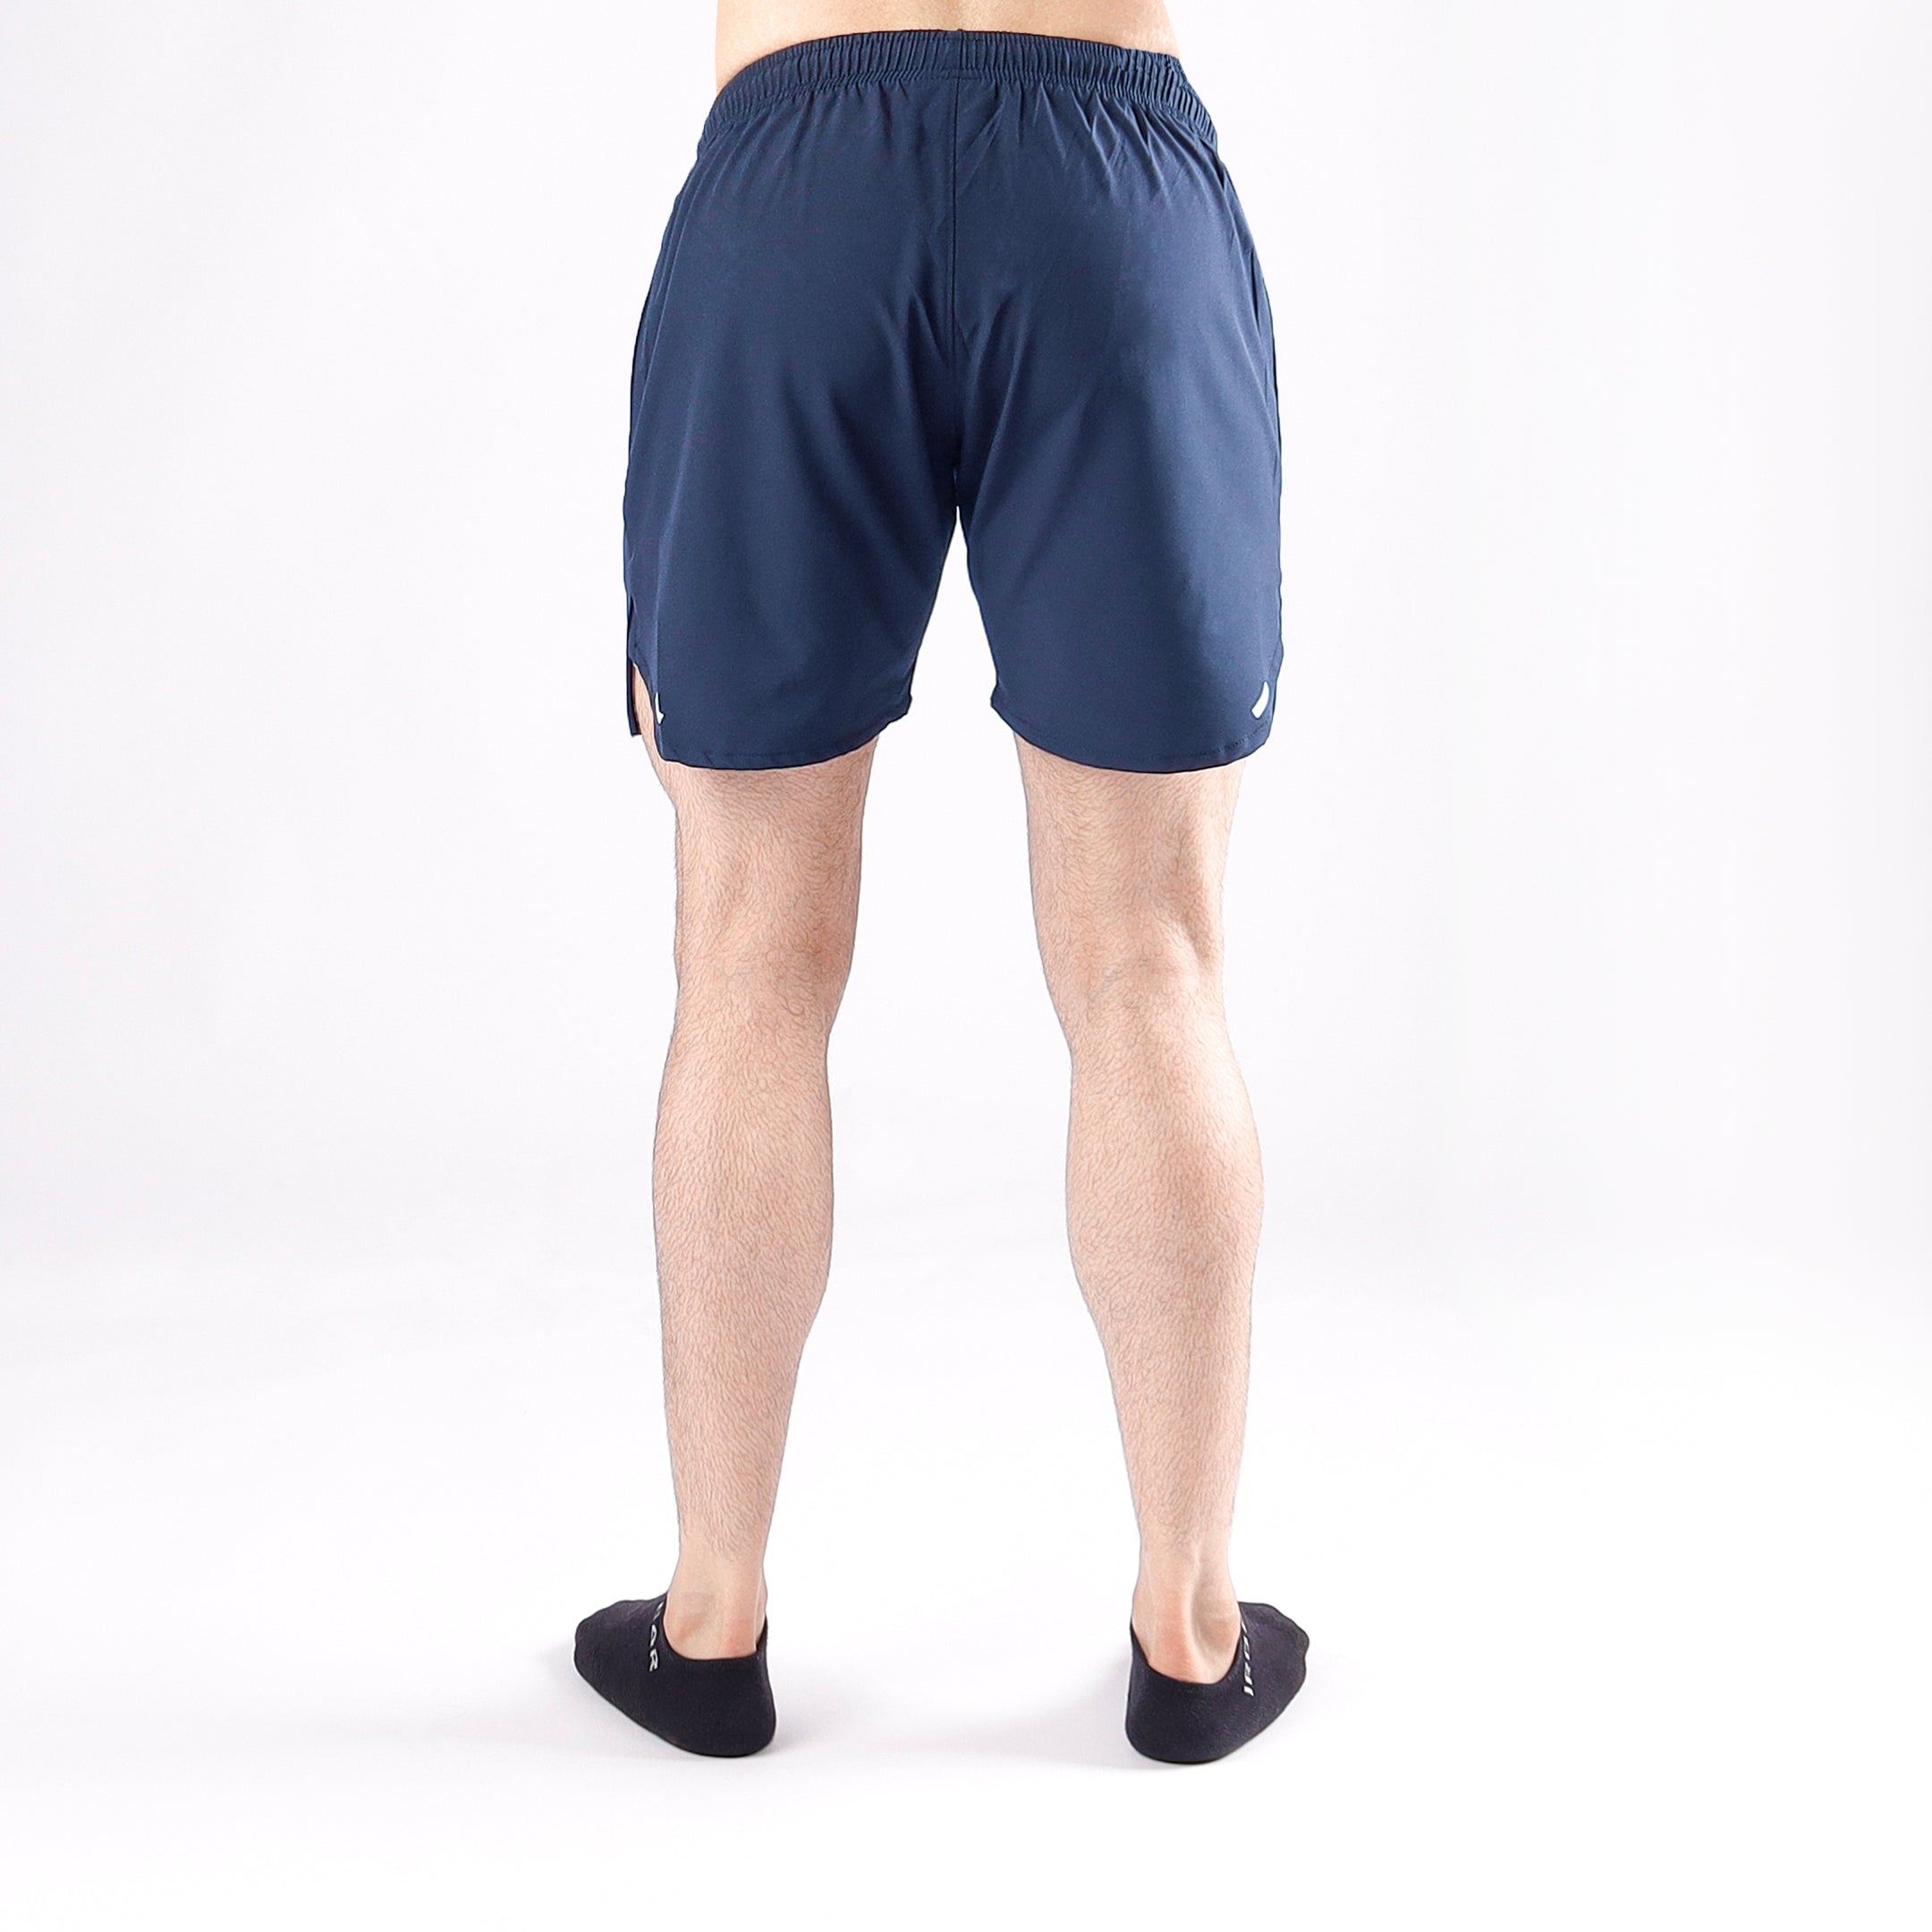 QuadZilla 5" Shorts